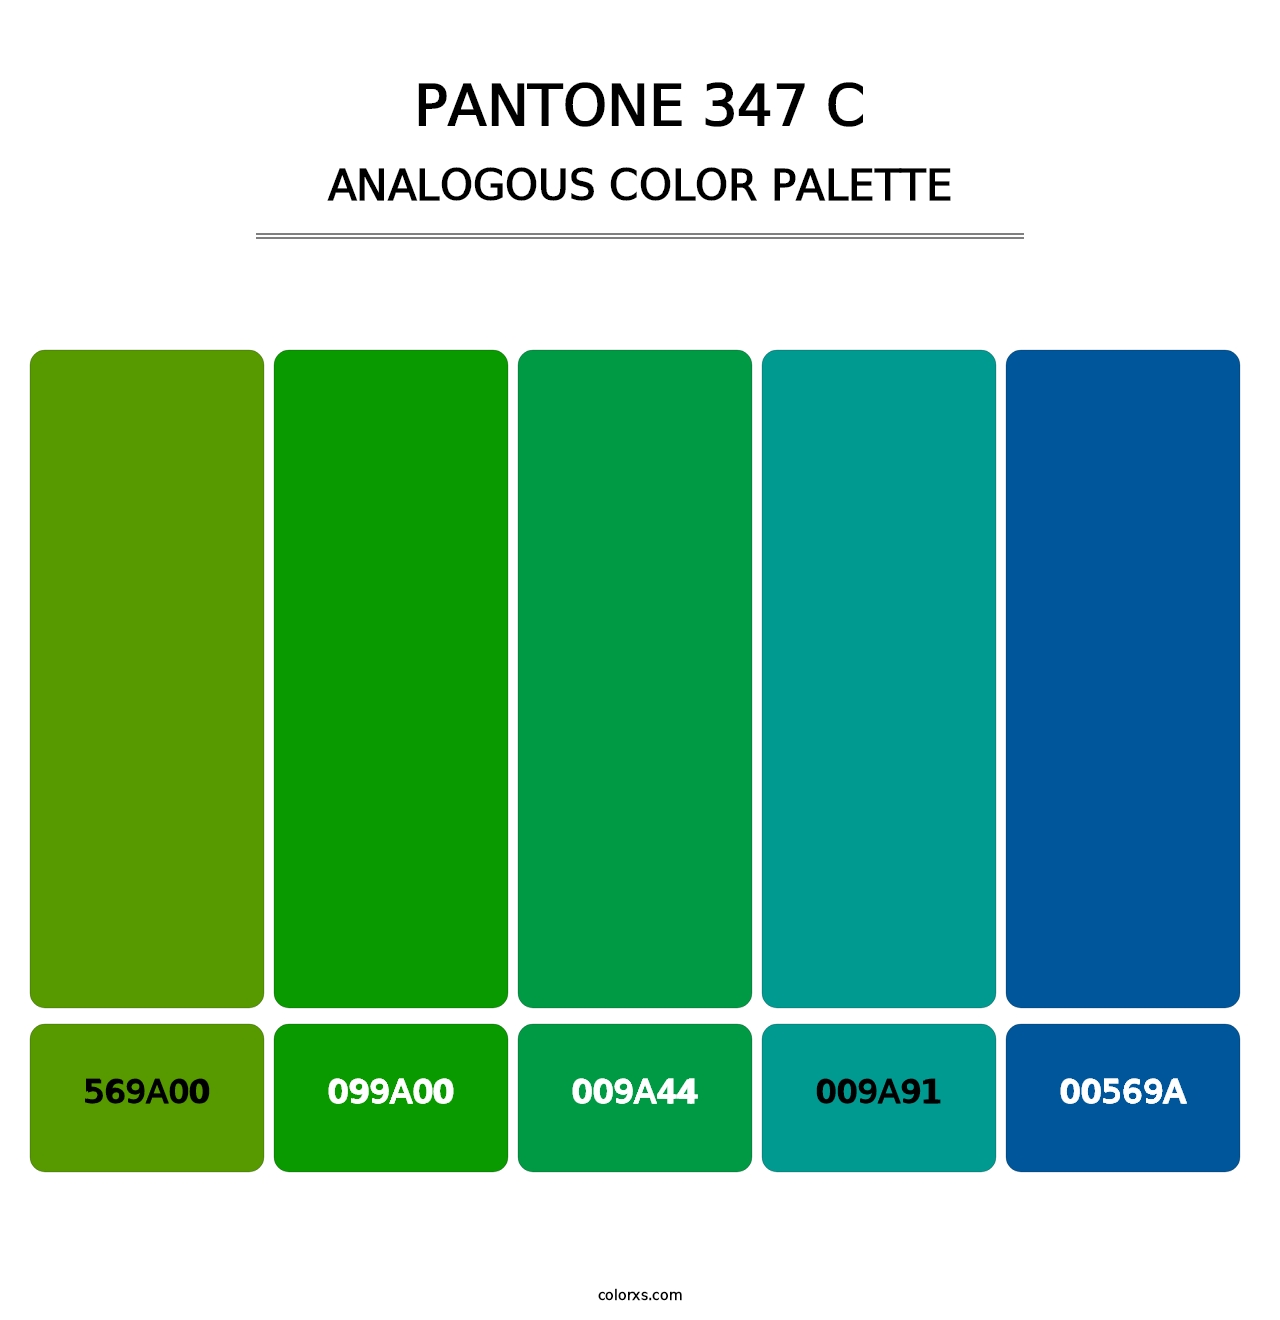 PANTONE 347 C - Analogous Color Palette